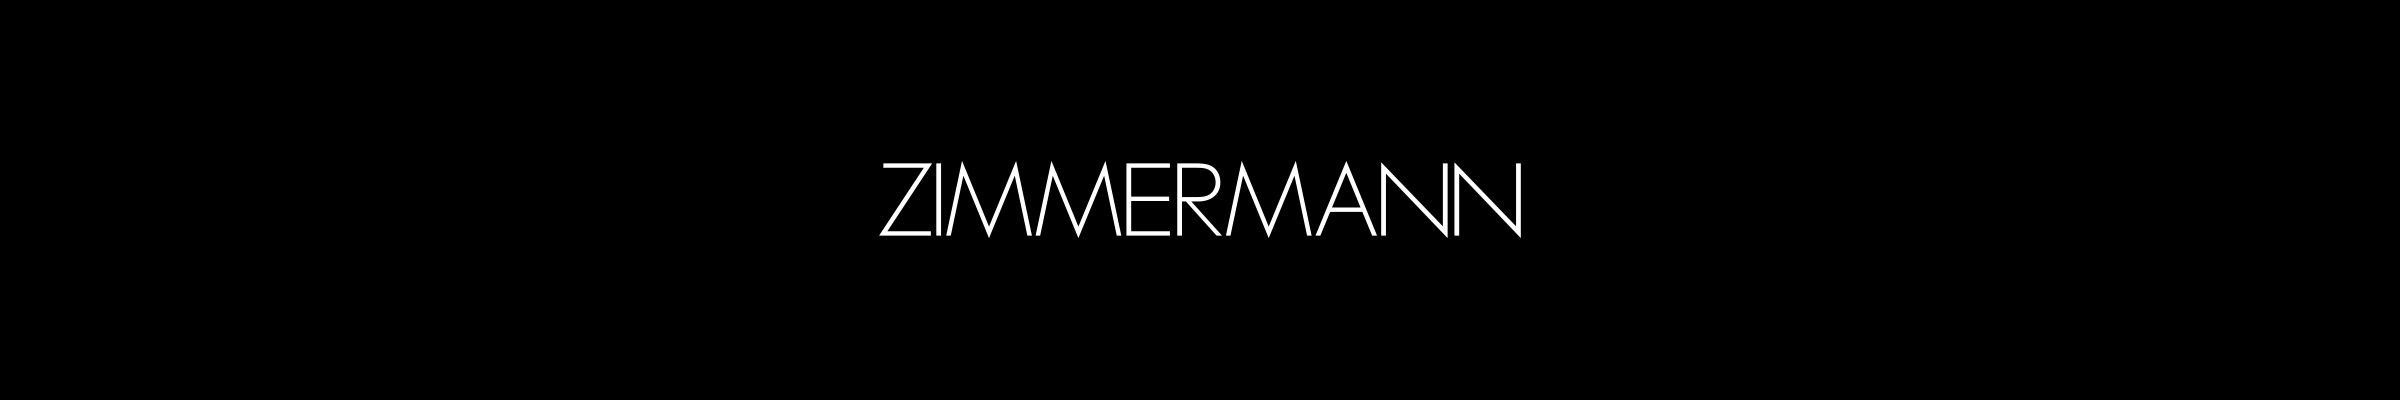 zimmermann-banner